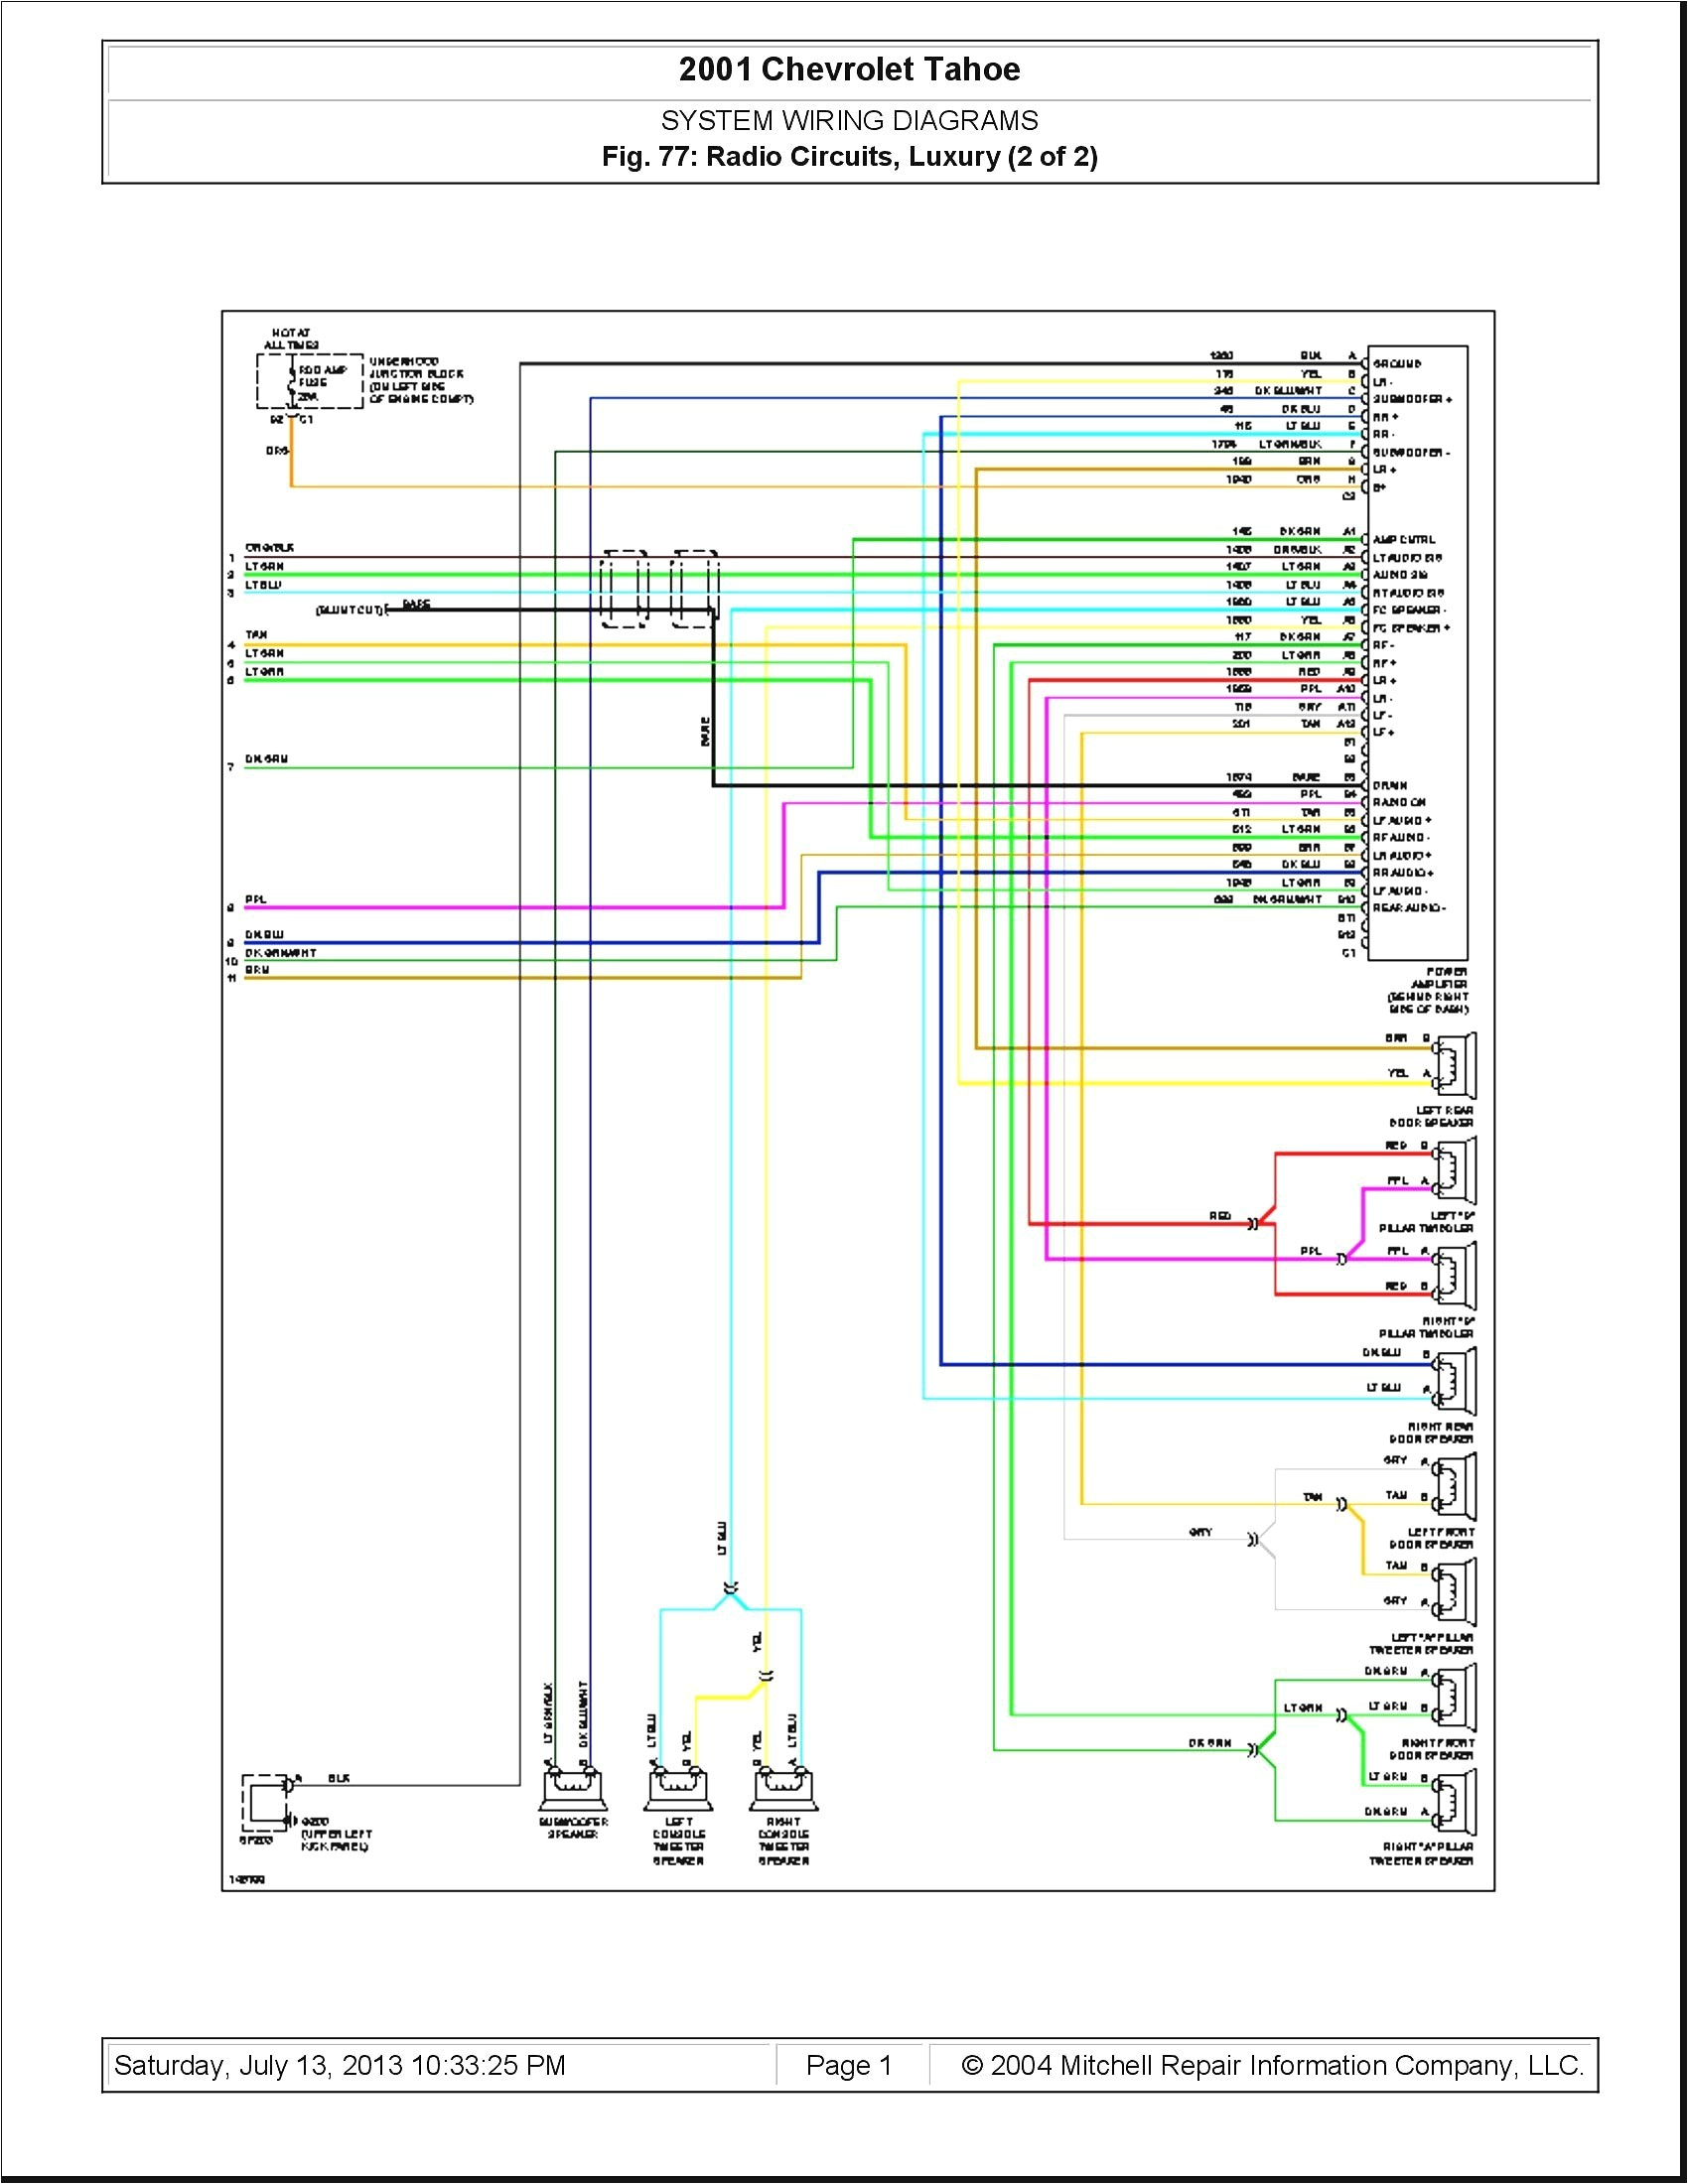 2015 chevrolet silverado radio wiring diagram wiring diagram namediagram further 2015 silverado speaker wiring on 2001